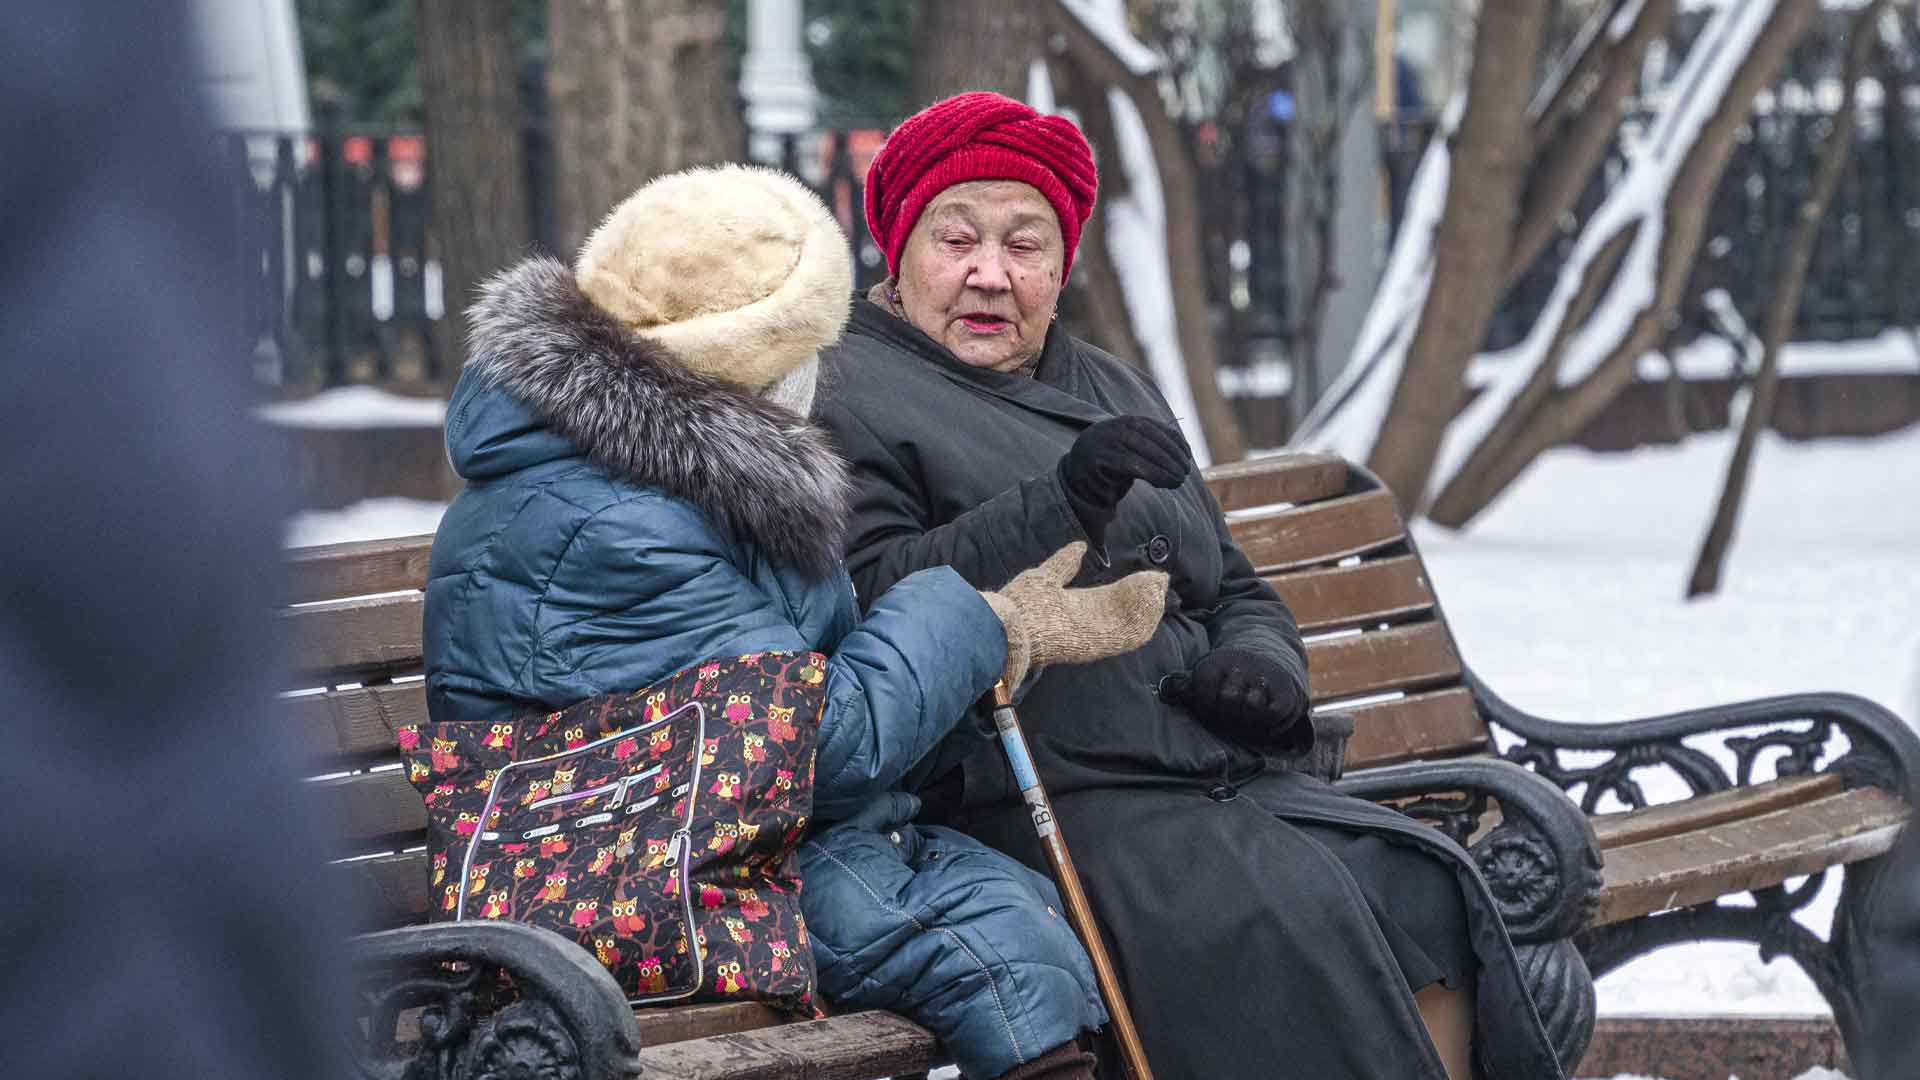 Предполагается, что до конца года на пенсию смогут выйти граждане, которым остается три года до заслуженного отдыха Фото: © GLOBAL LOOK press / Konstantin Kokoshkin